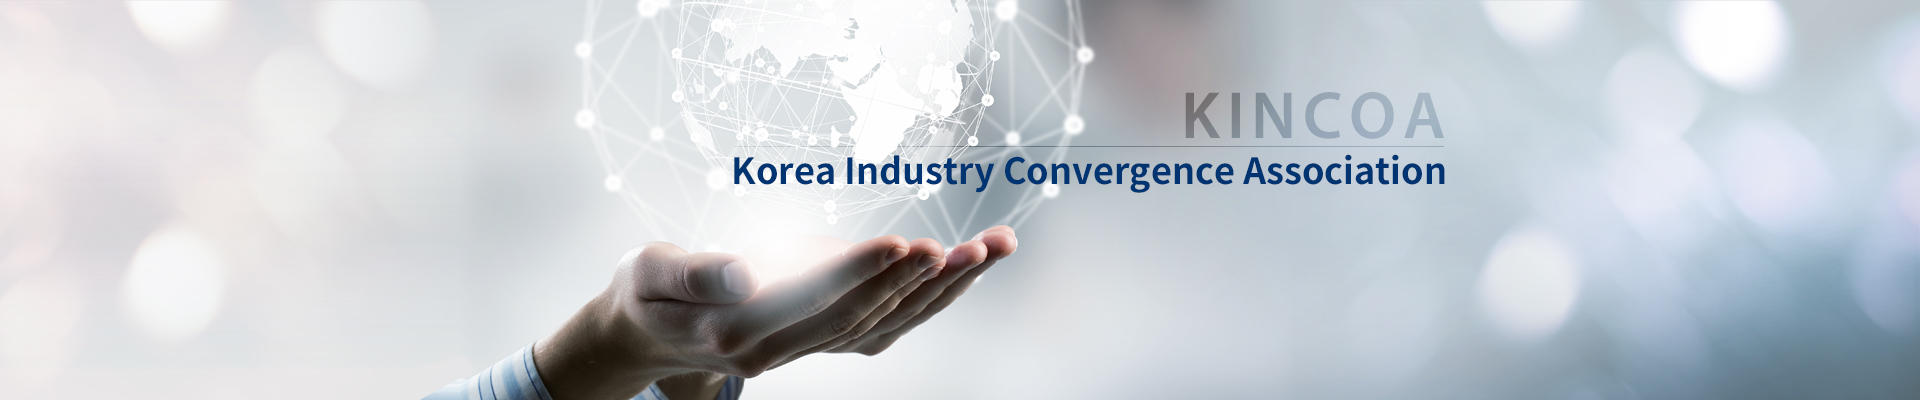 산업간 융합을 통한 혁신적인 기술 및 신산업 창조, 한국산업융합협회 / KINCOA